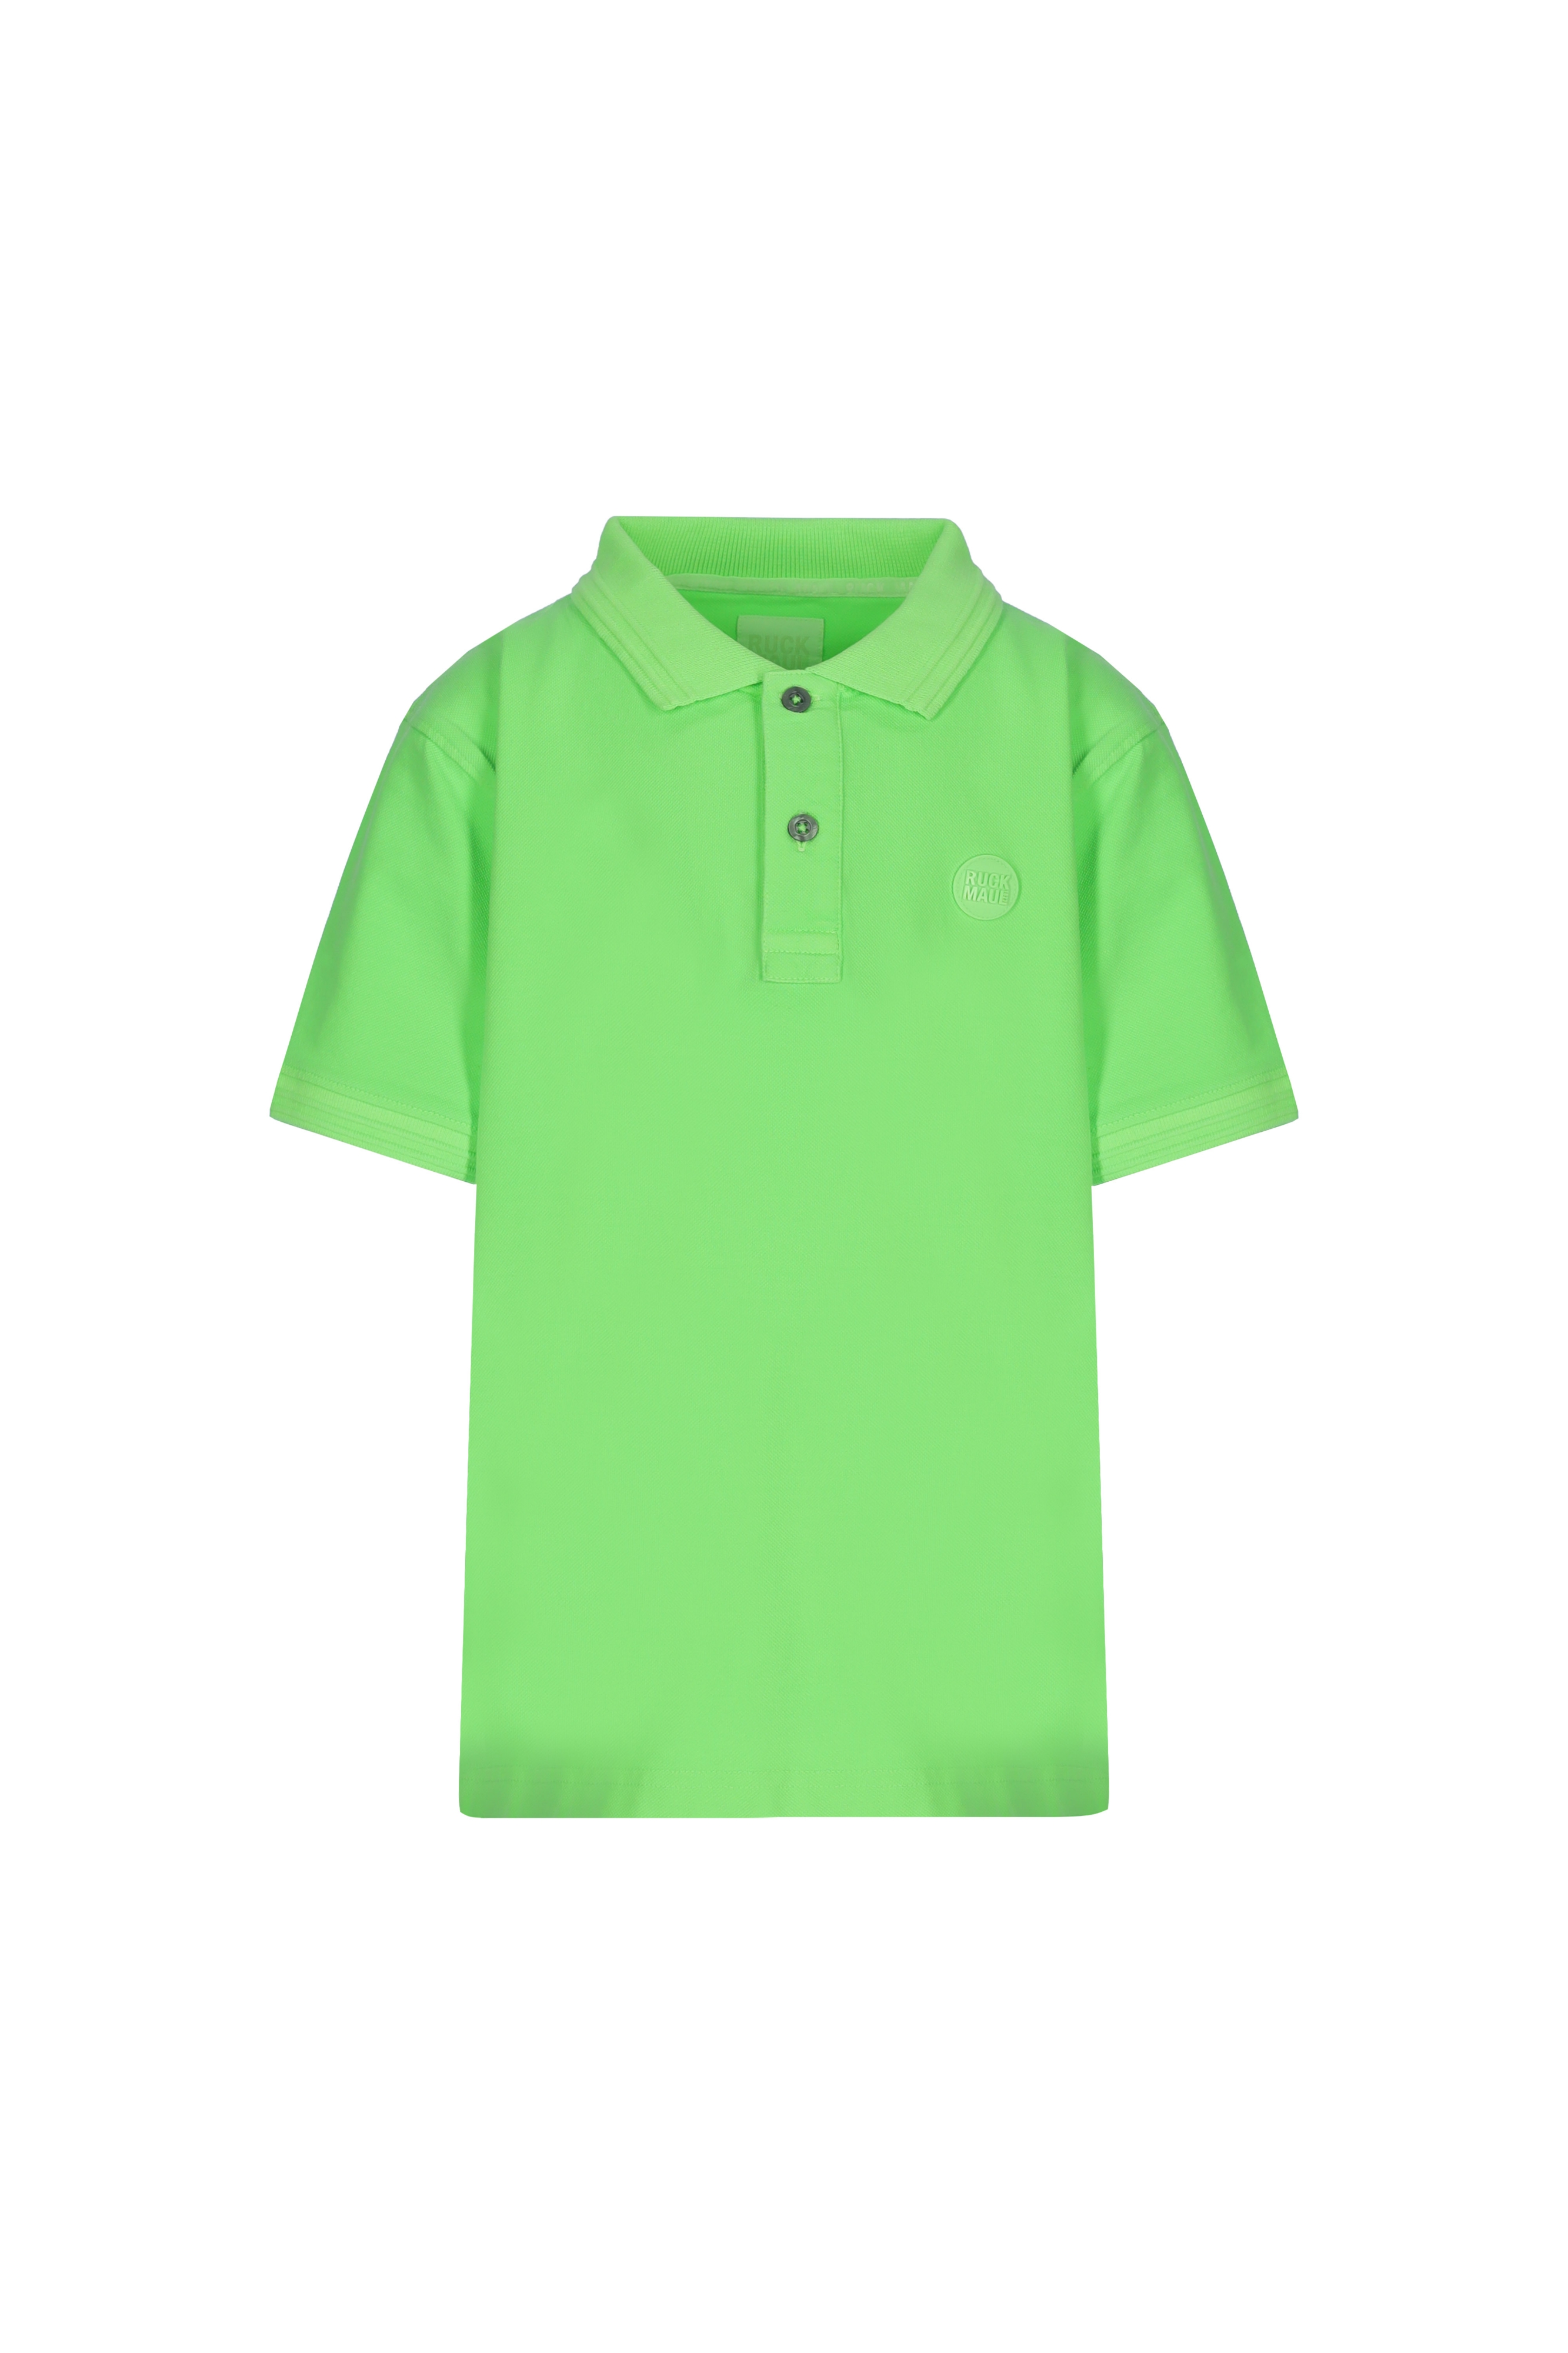 Neon Yeşil Çocuk Polo Tişört